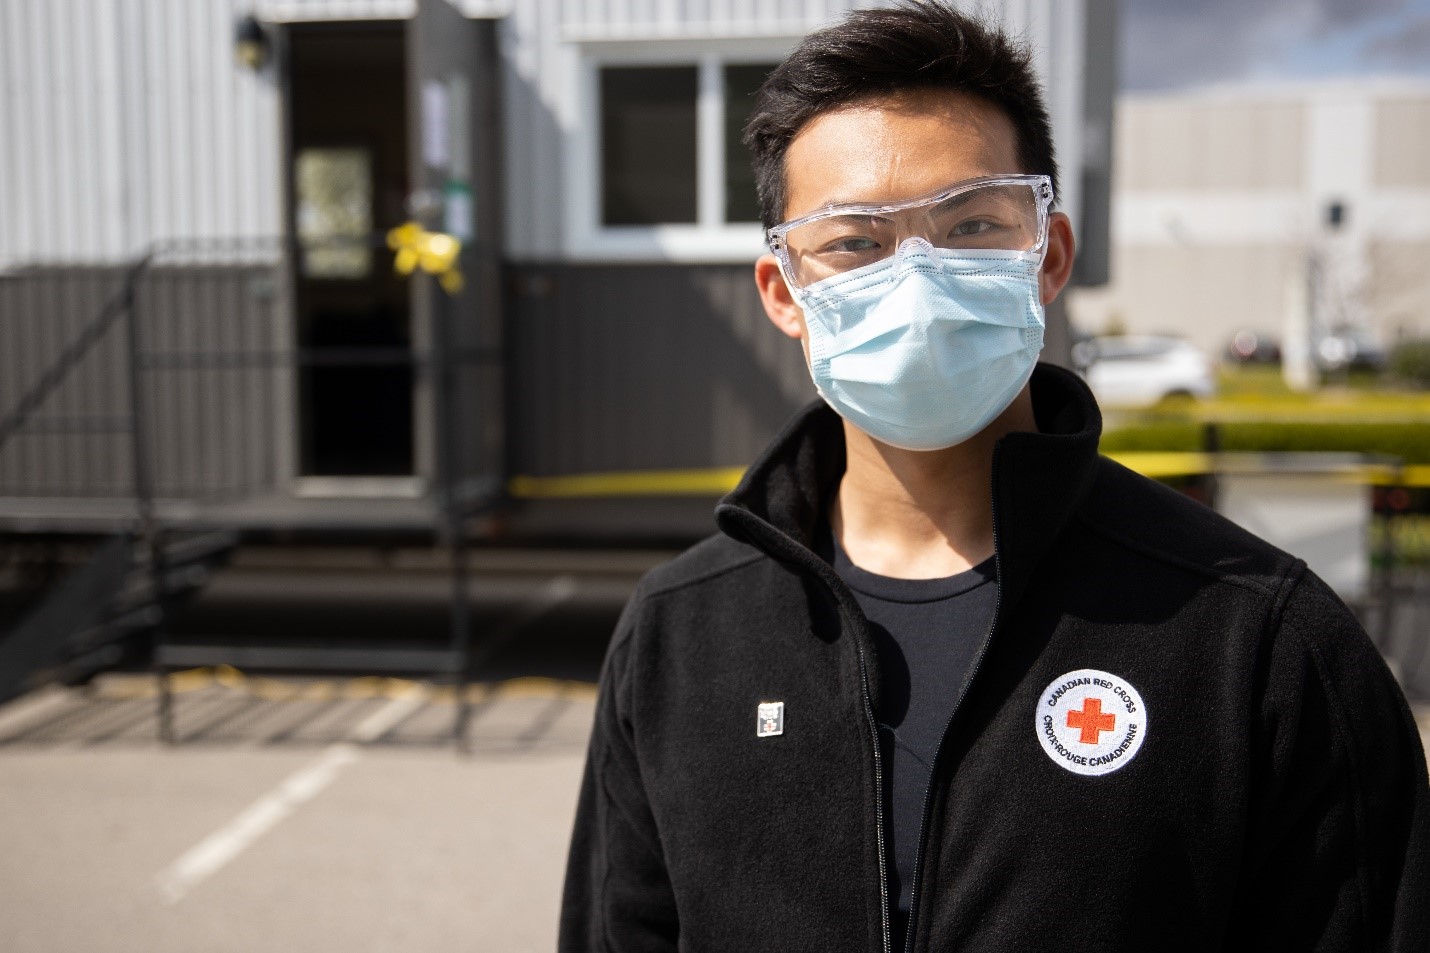 Un travailleur de la Croix-Rouge à l’extérieur portant un masque médical et des lunettes de protection